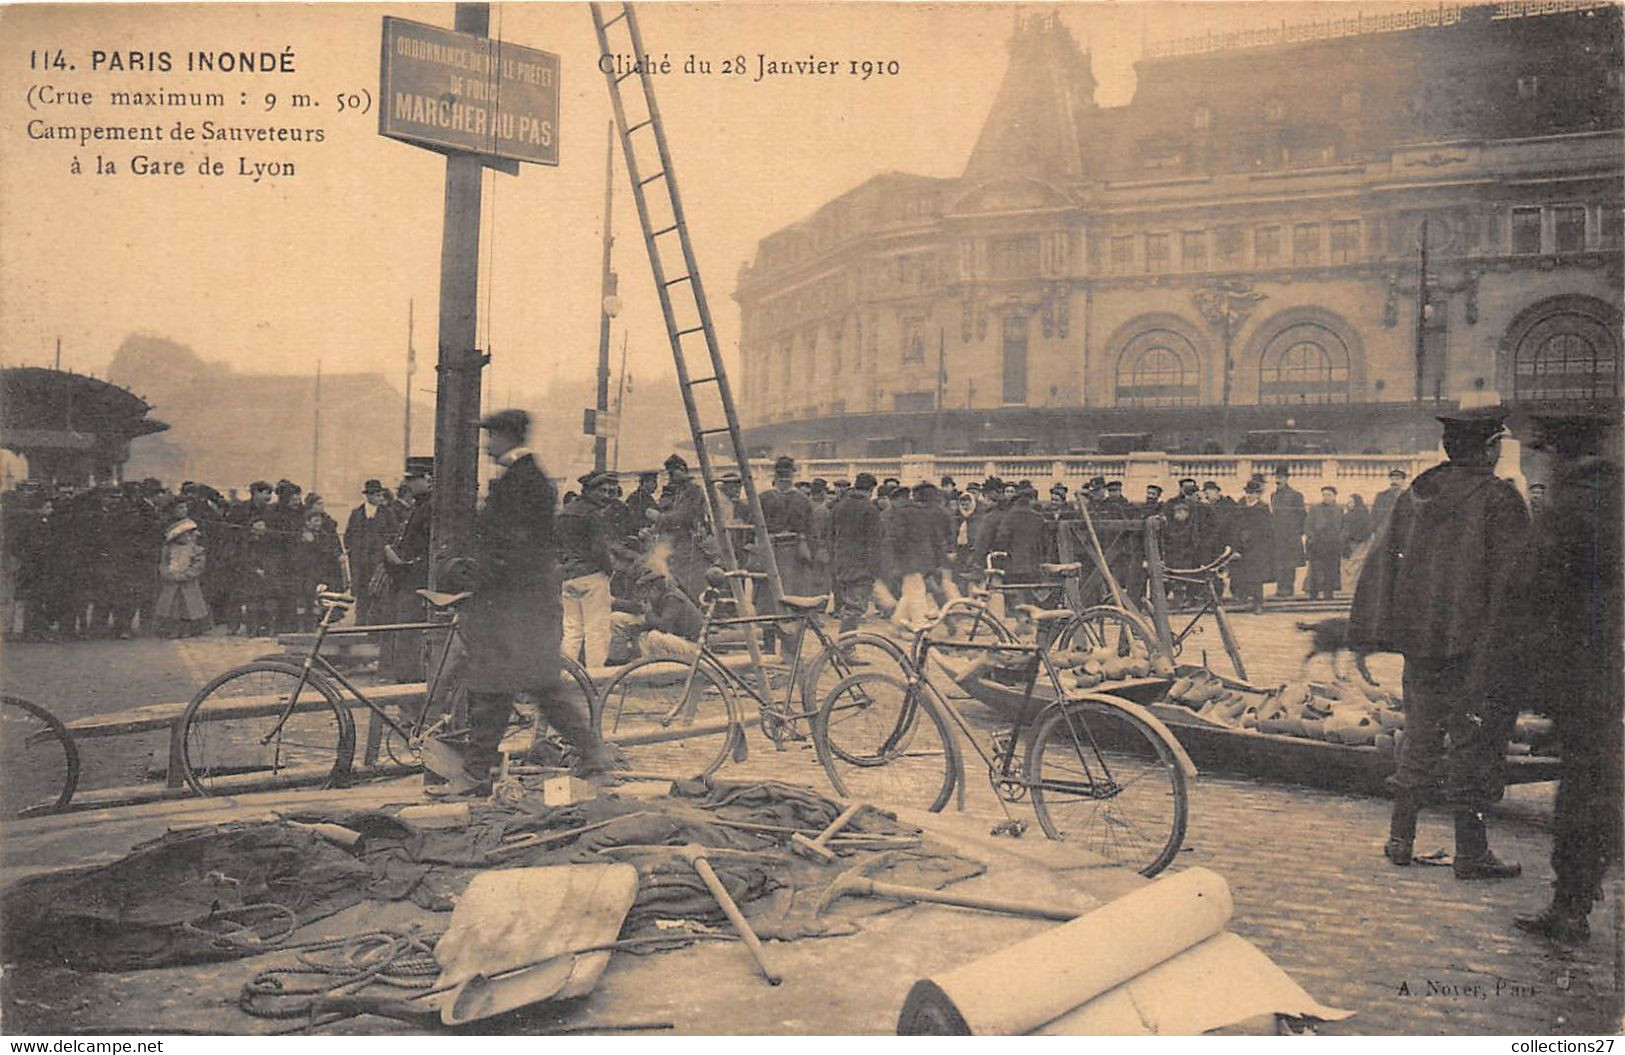 PARIS-INONDE, A LA GARE DE LYON, CAMPEMENT DE SAUVETEURS - Pariser Métro, Bahnhöfe